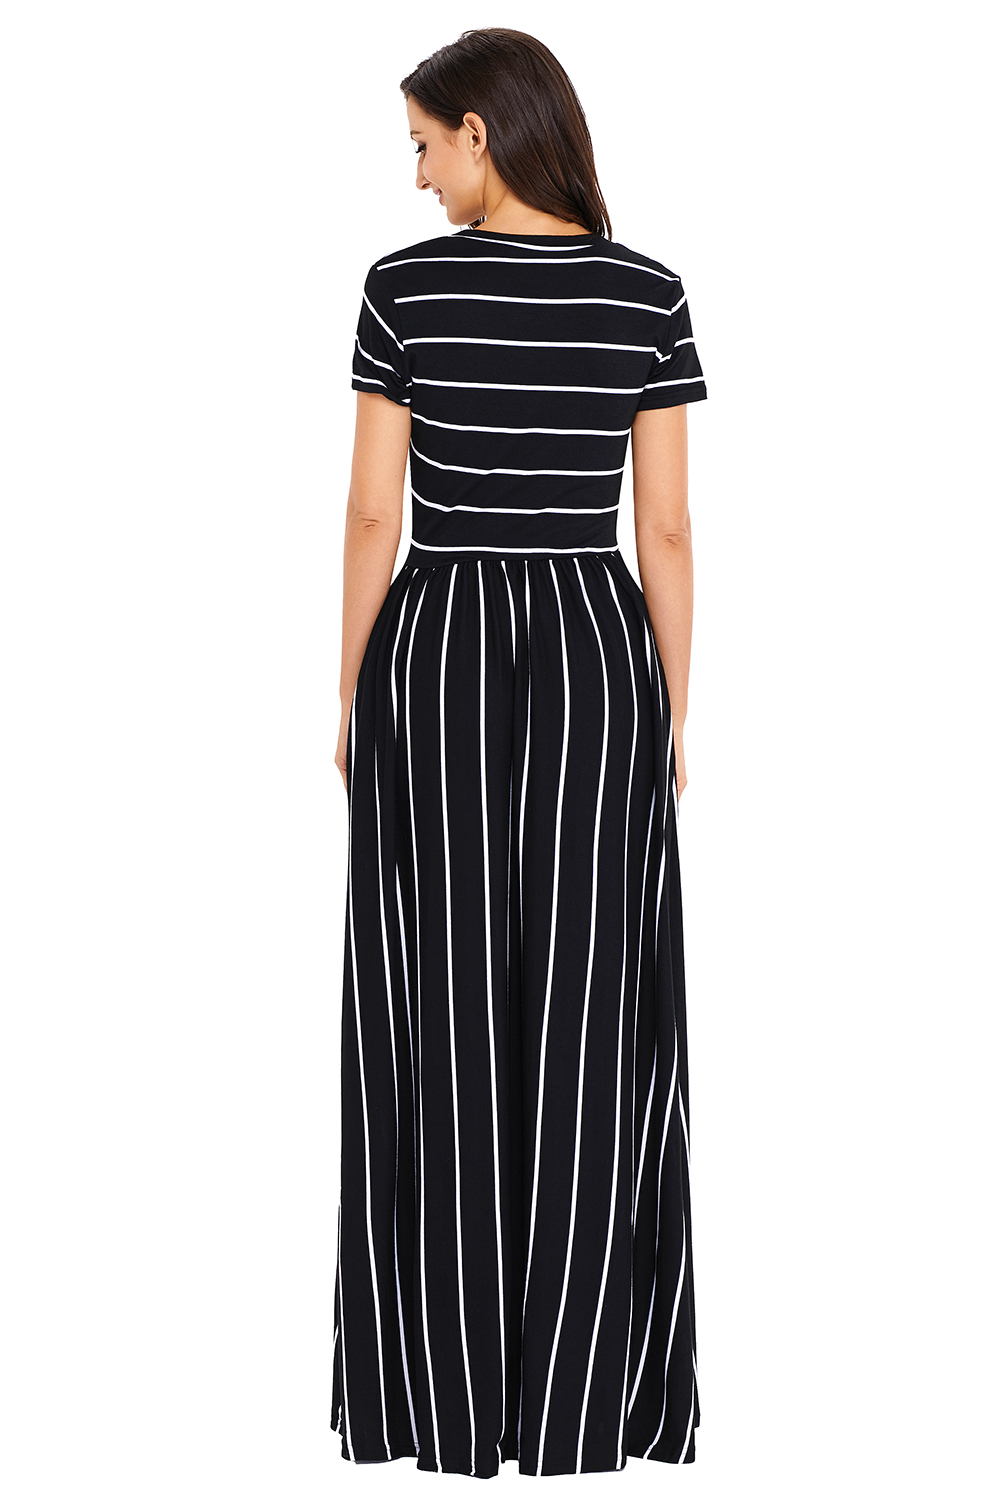 Ladies Maxi Striped dress (14)